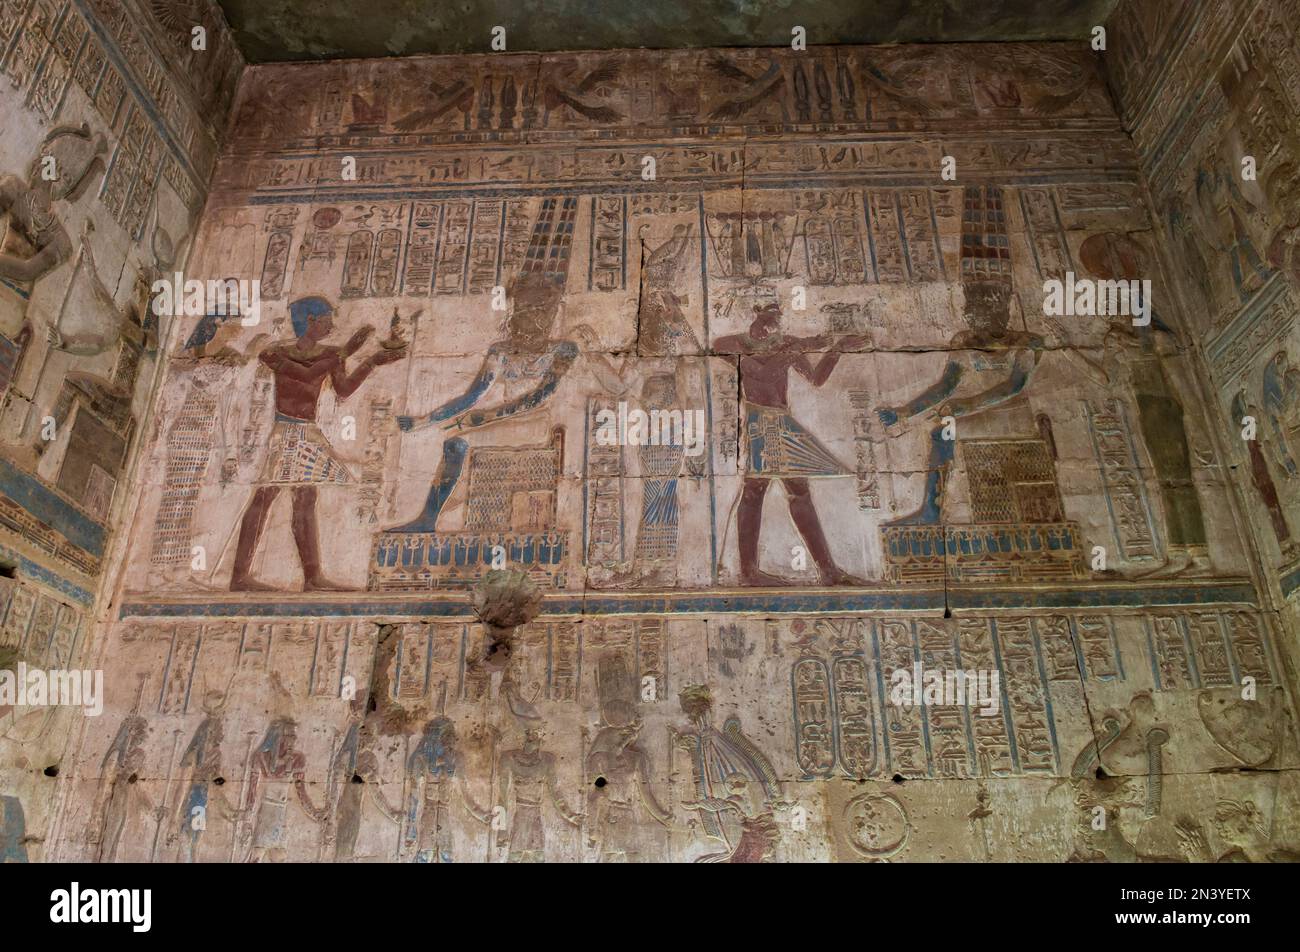 Tableaux de sculpture Hiéroglypique sur le mur de l'ancien temple égyptien d'Opet à Karnak Louxor en Égypte Banque D'Images